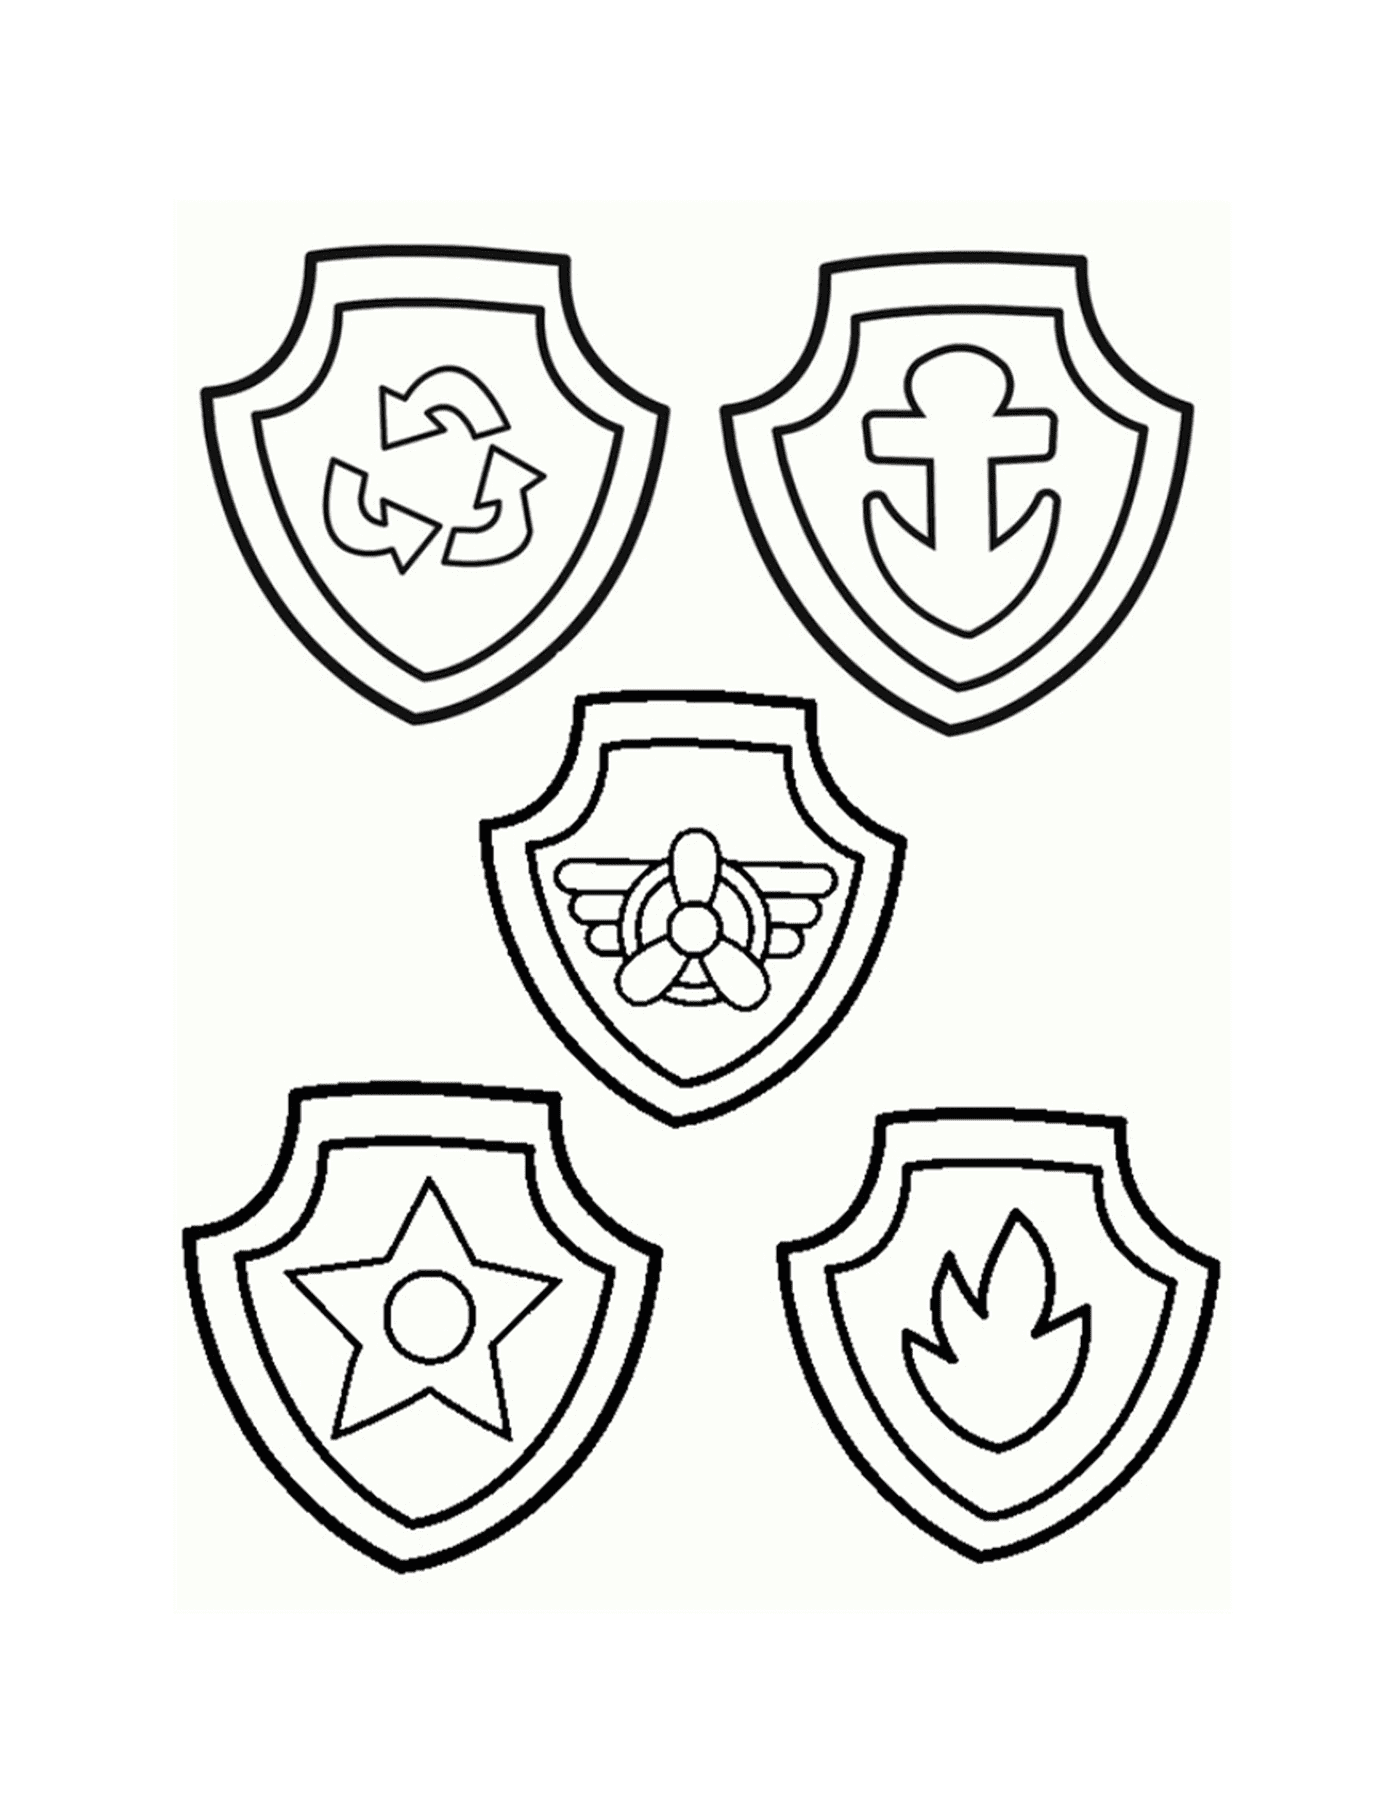  pat patrol badges 